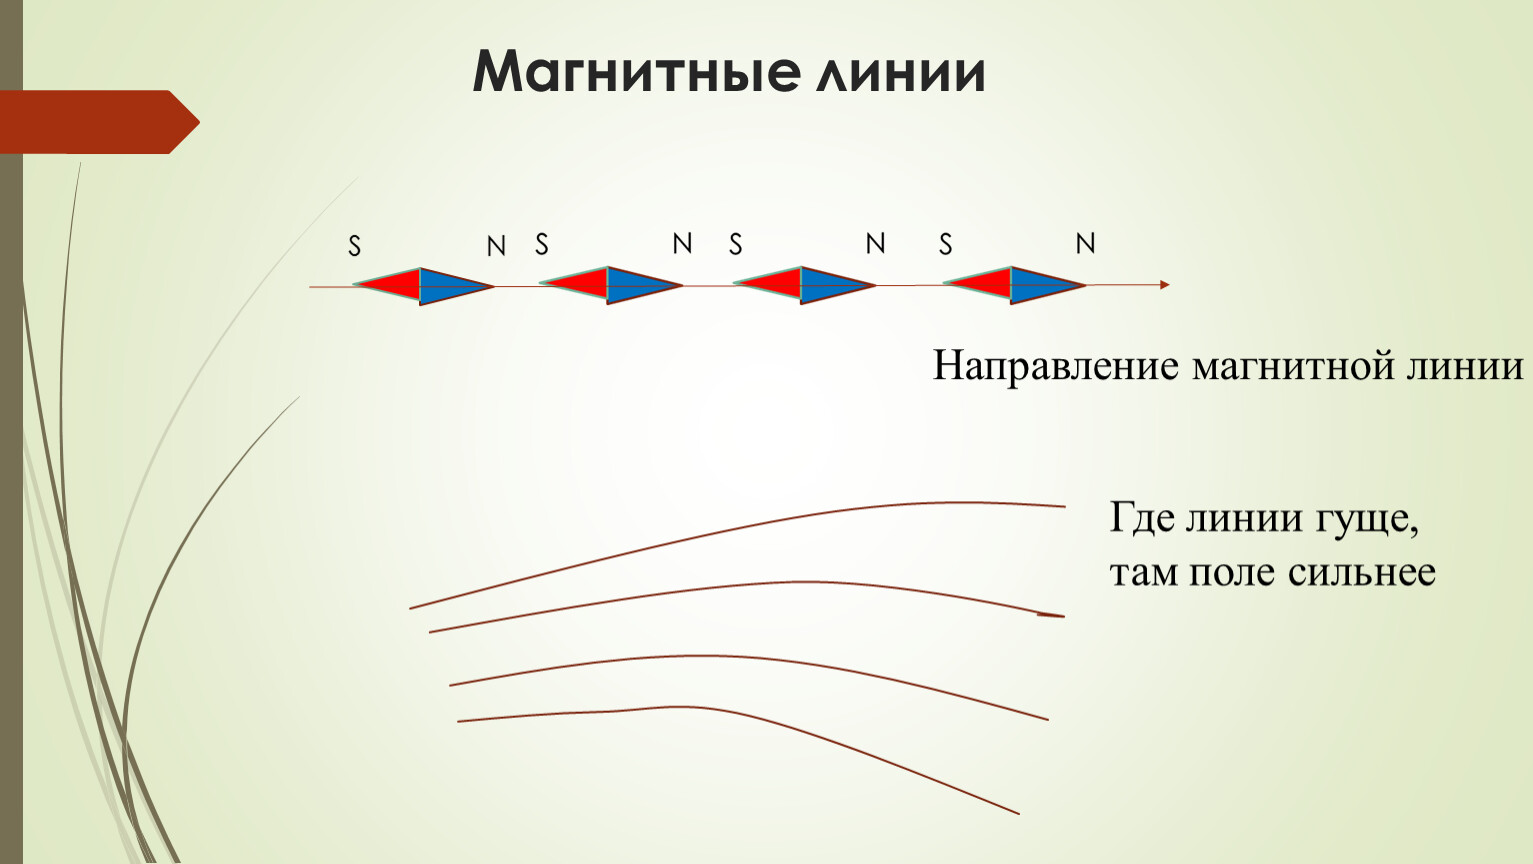 Задачи на направление магнитных линий. Магнитные линии. Направление магнитных линий. Магнитные линии магнита. Определите направление магнитных линий.